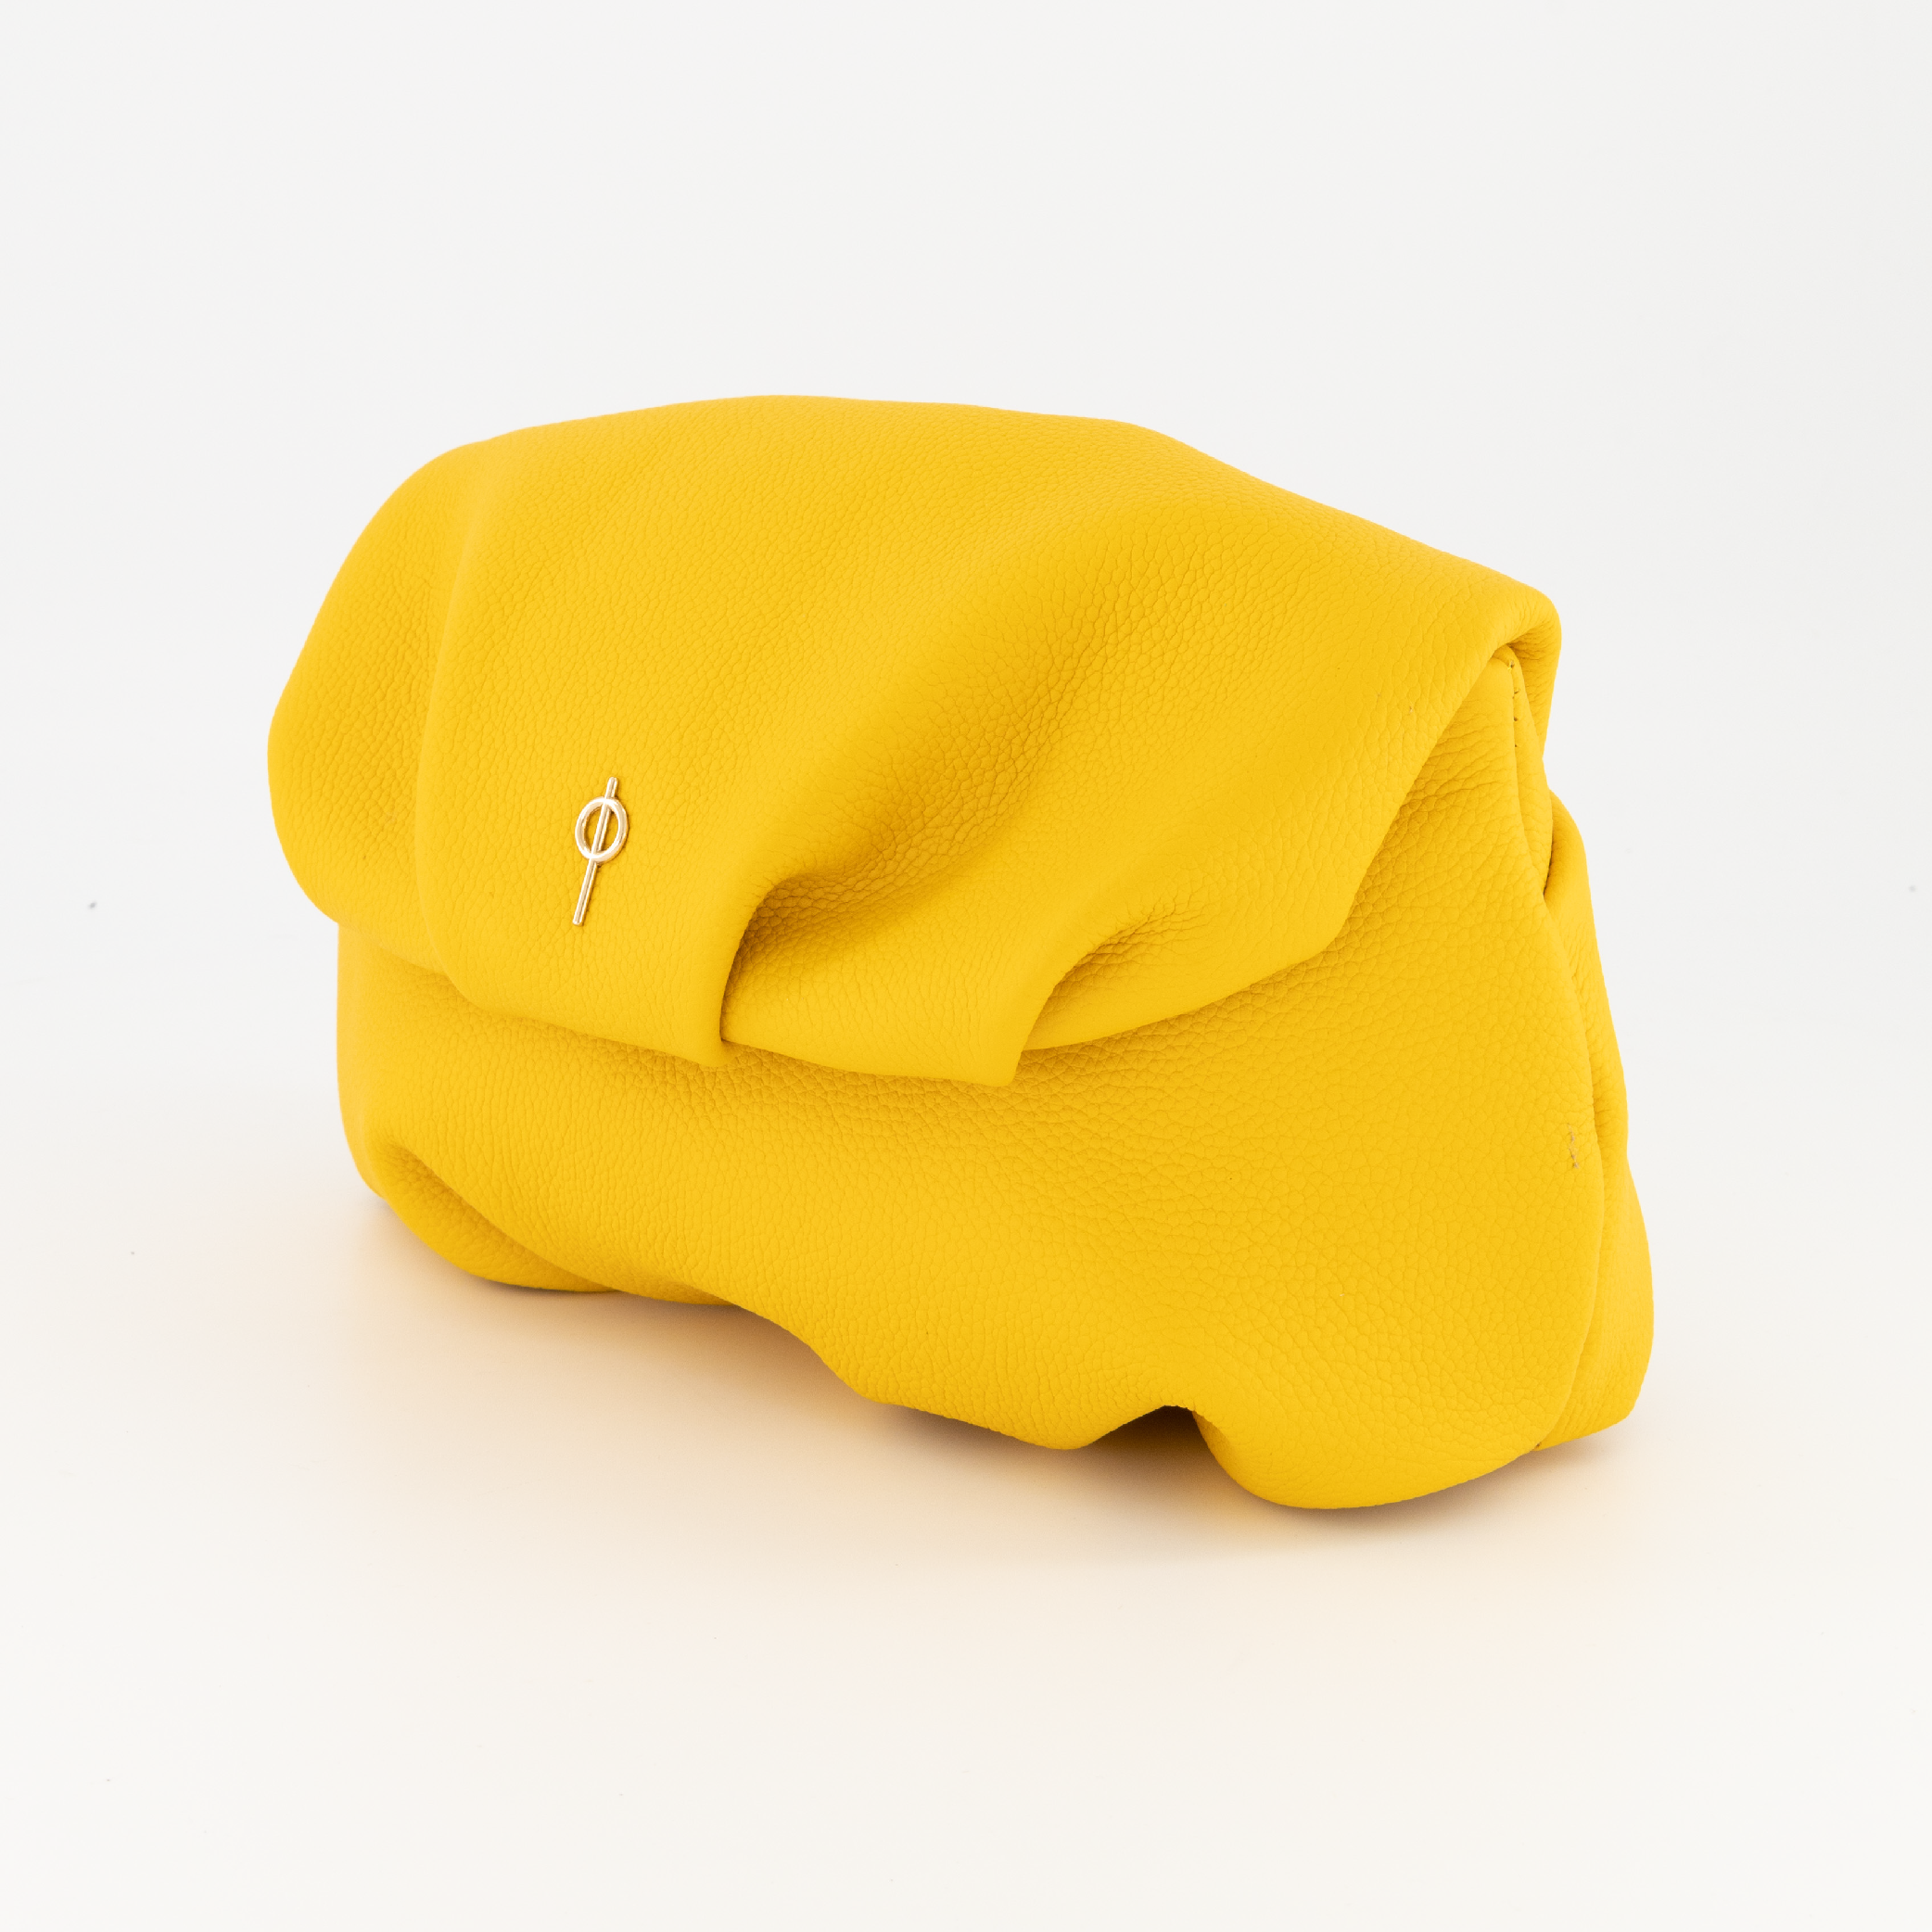 Leda Floater Yellow